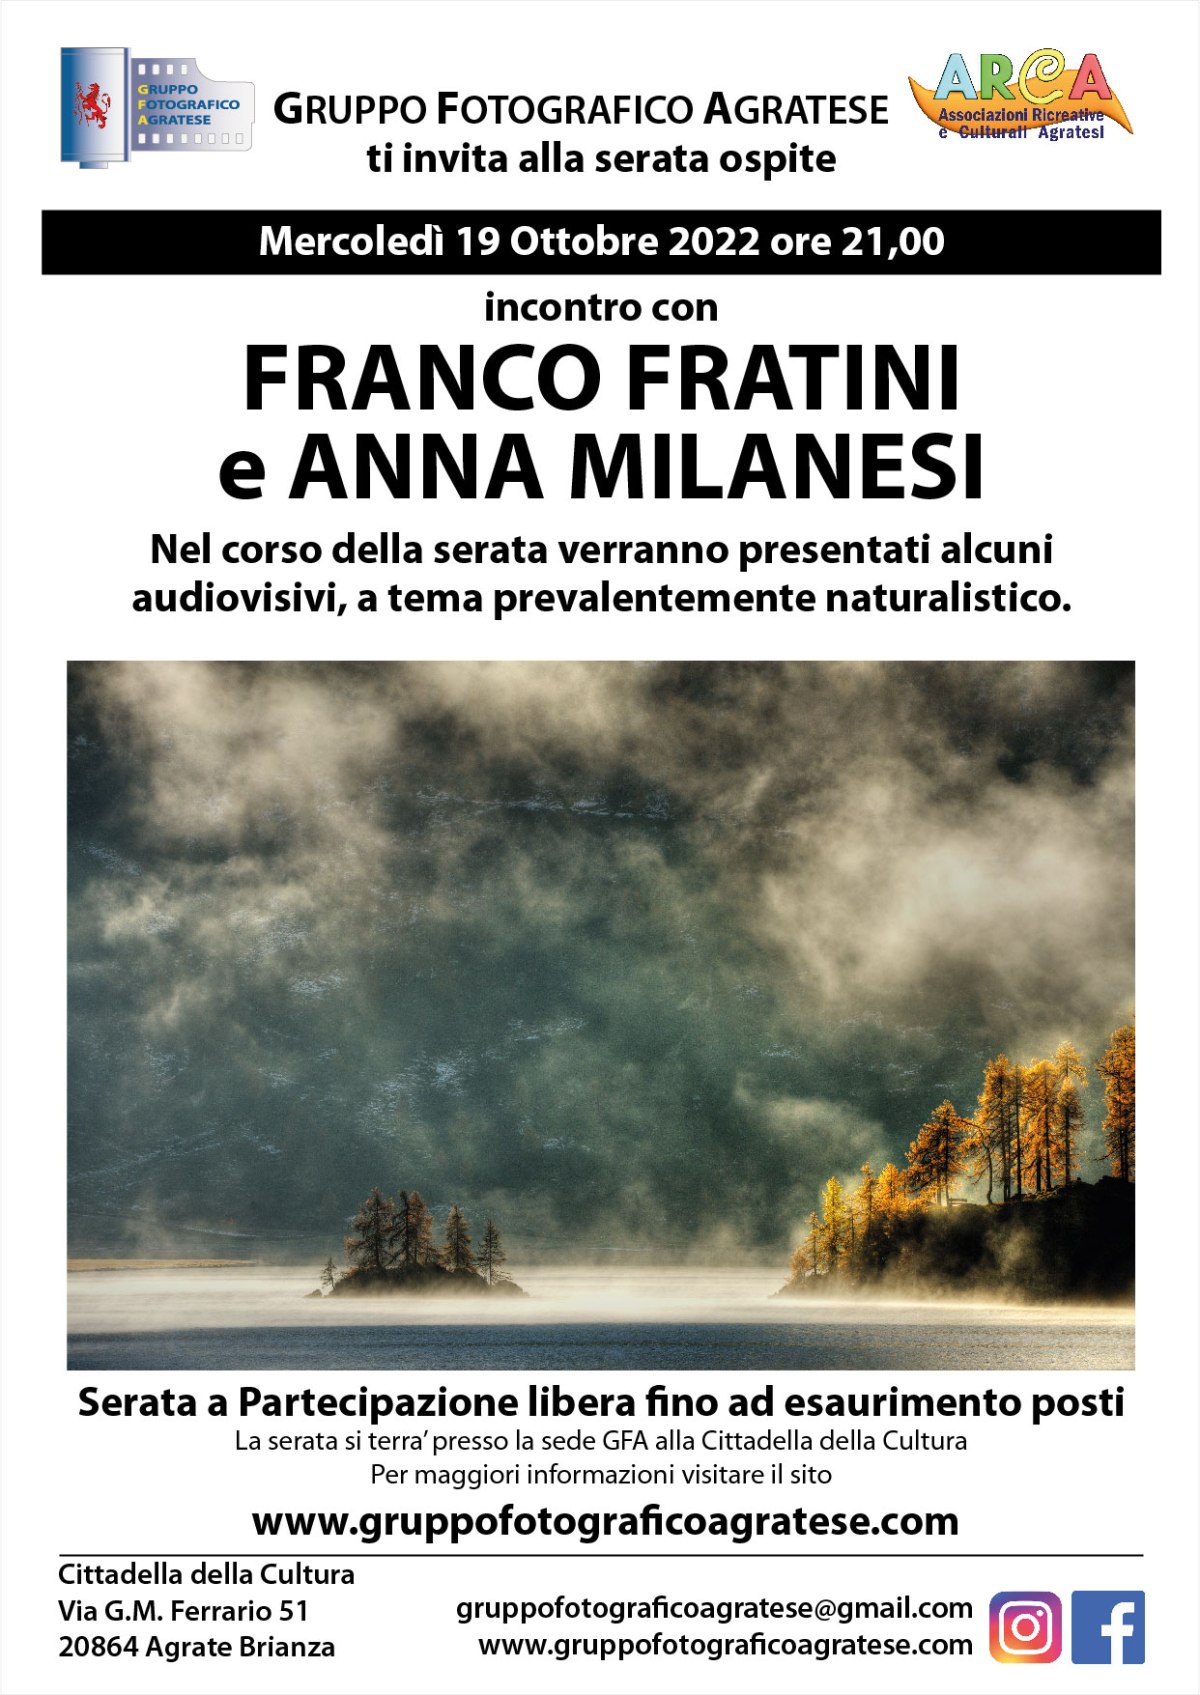 19 Ottobre, ore 21 – serata in sede con le immagini di Franco Fratini e i testi di Anna Milanesi